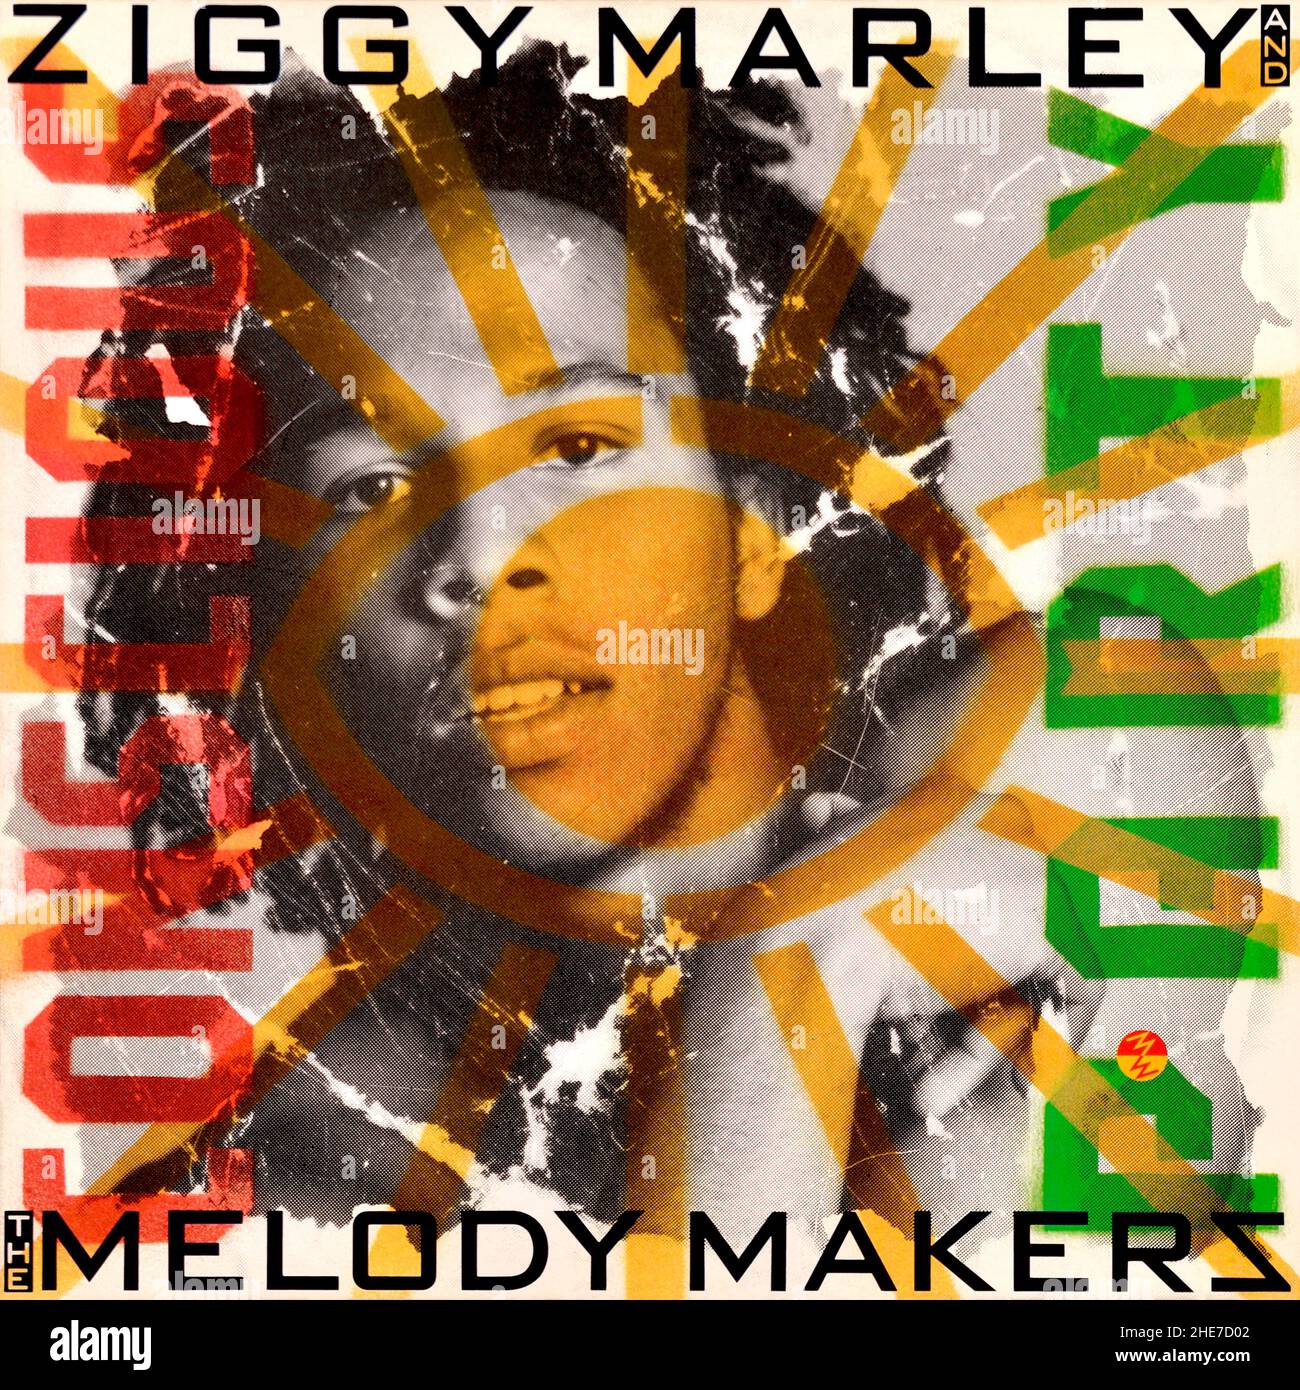 Ziggy Marley et The Melody Makers - couverture originale de l'album en vinyle - Conscious Party - 1988 Banque D'Images